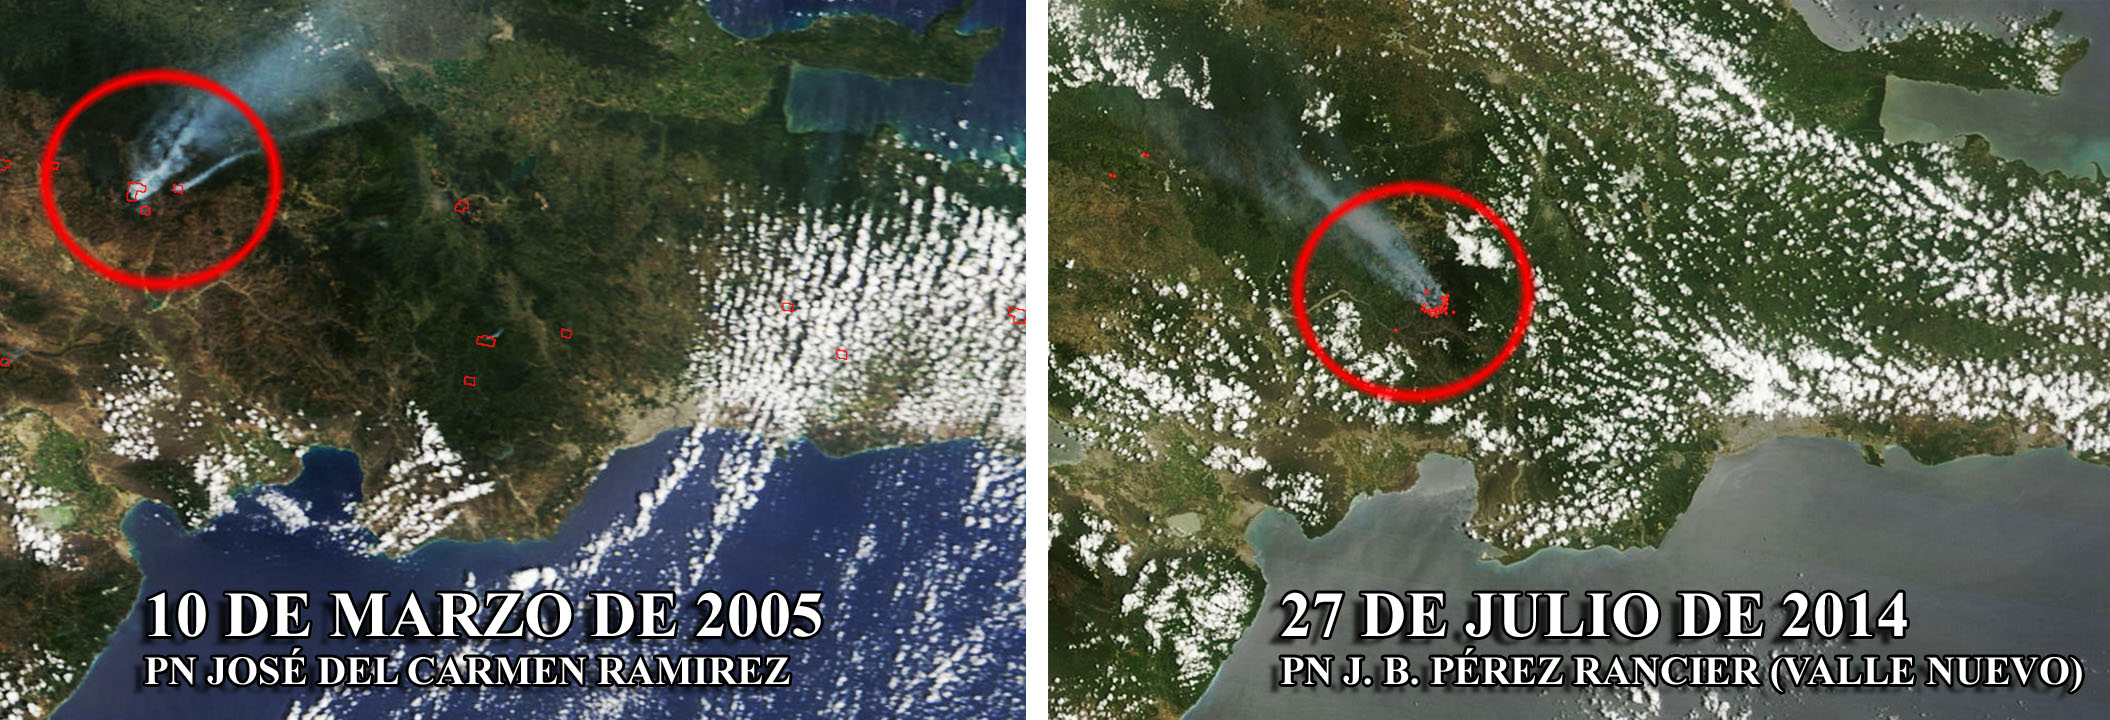 Incendio 2005 PN José del Carmen Ramírez vs. incendio 2014 Valle Nuevo, vistos por el sensor MODIS